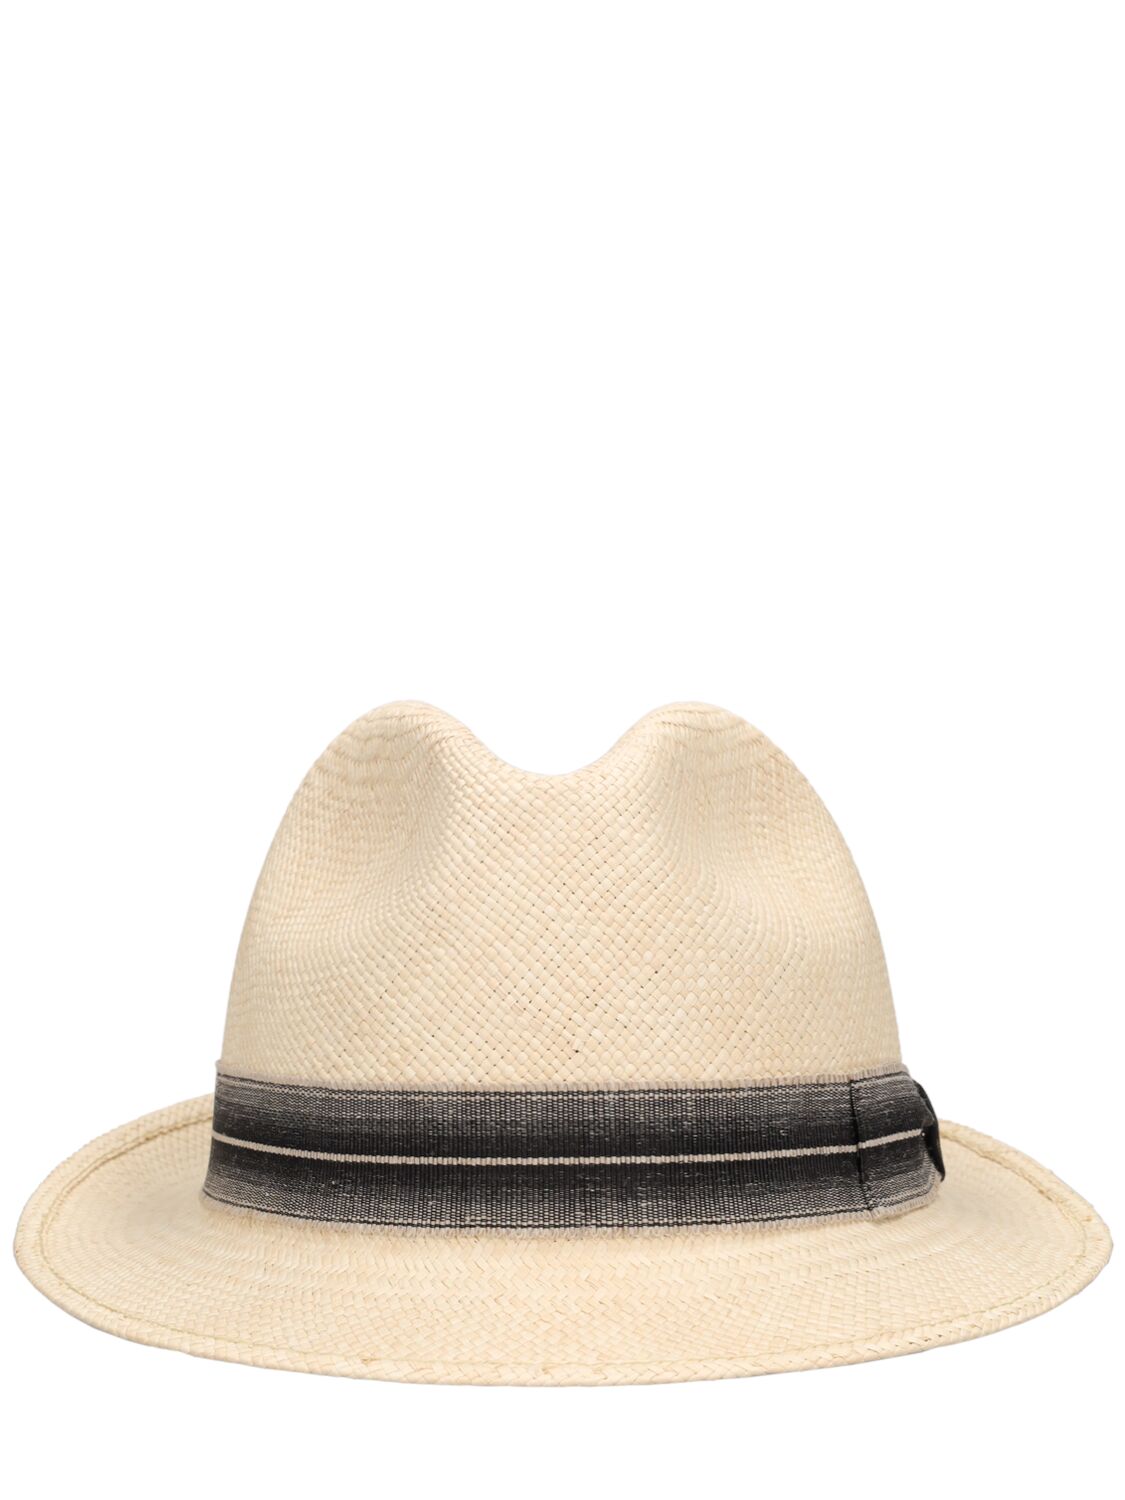 Borsalino Trilby Straw Panama Hat In Beige